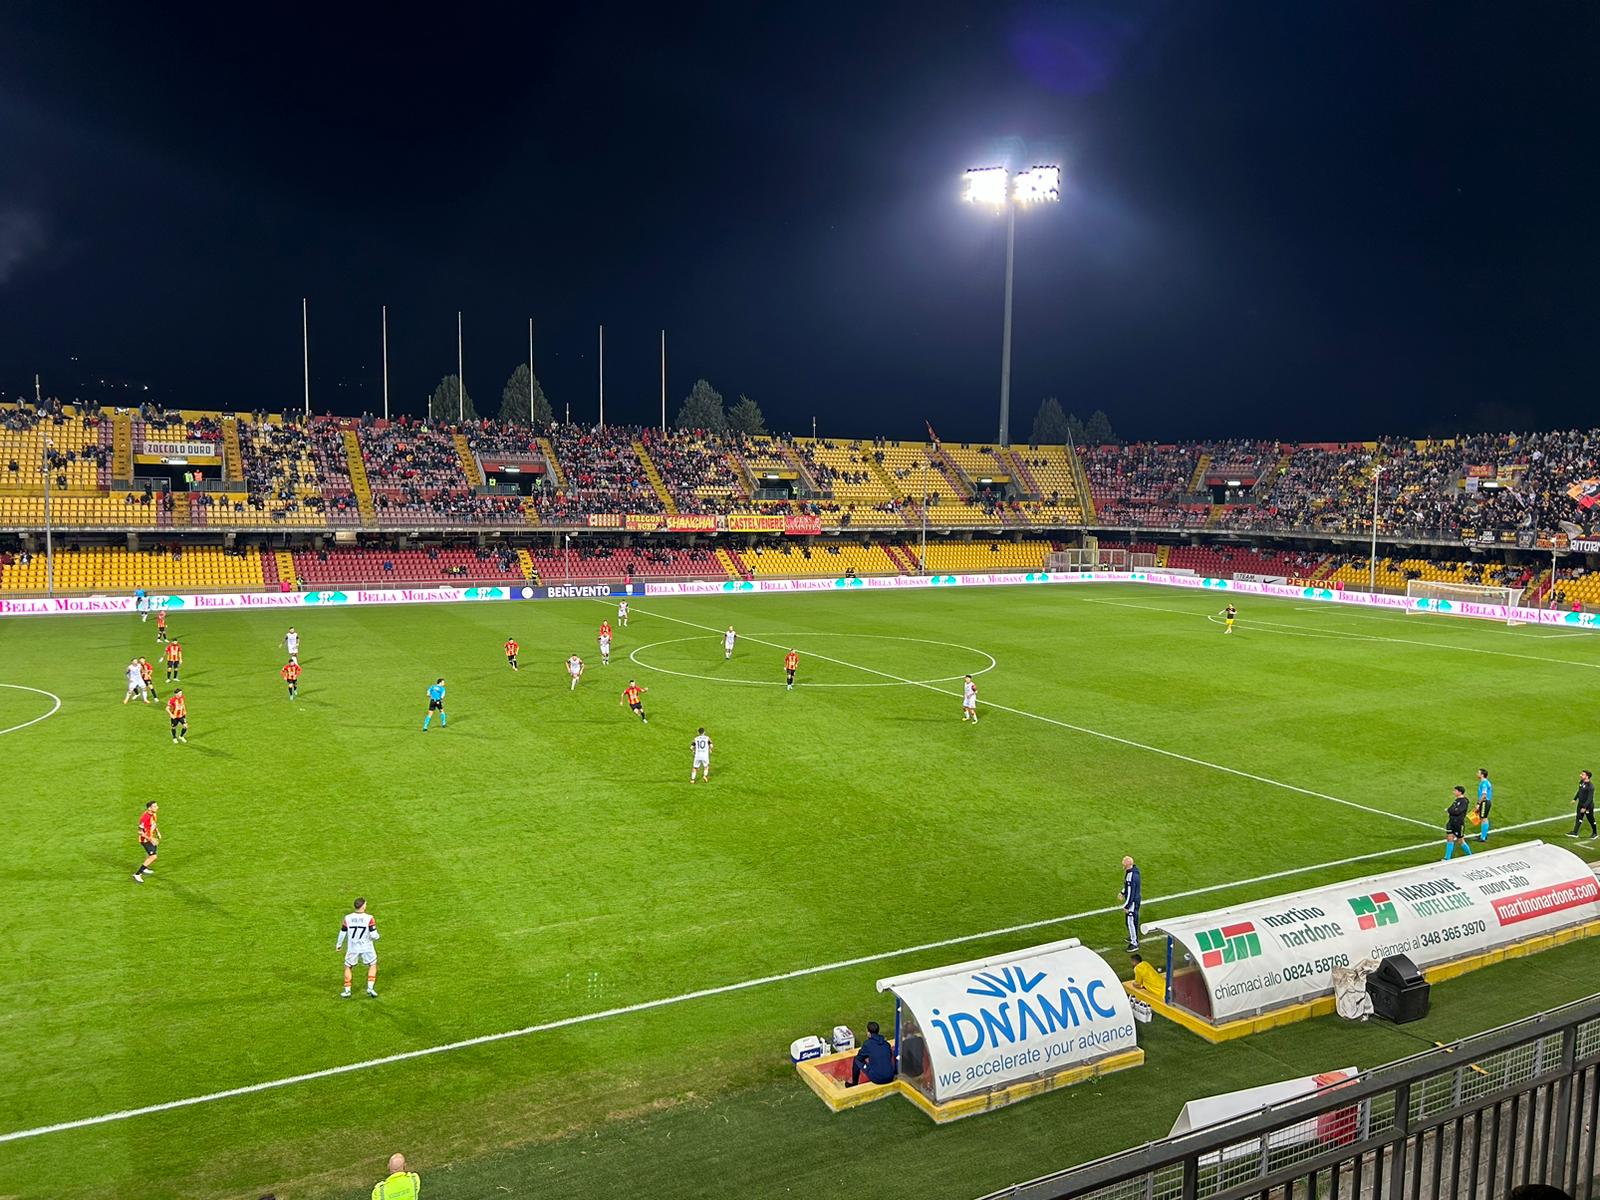 Benevento-Potenza: 1-0. Decide Masciangelo, i giallorossi rispondono alle vittorie di Avellino e Juve Stabia